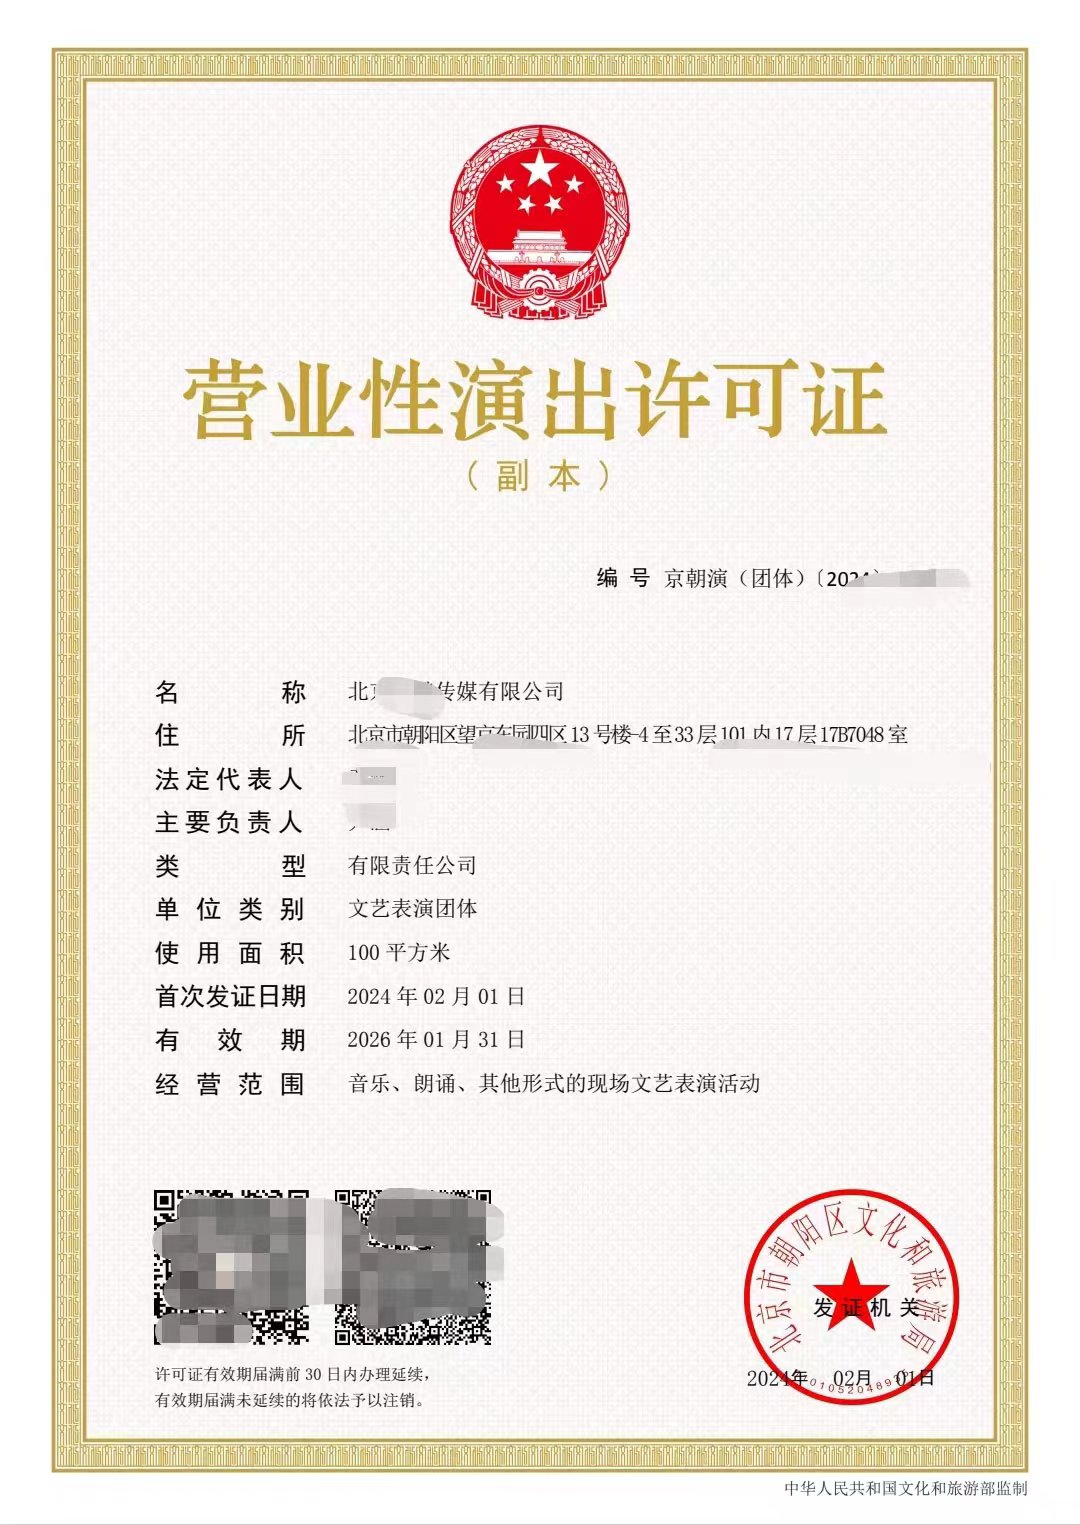 没有营业性演出许可证在北京市演出经纪机构的办理条件